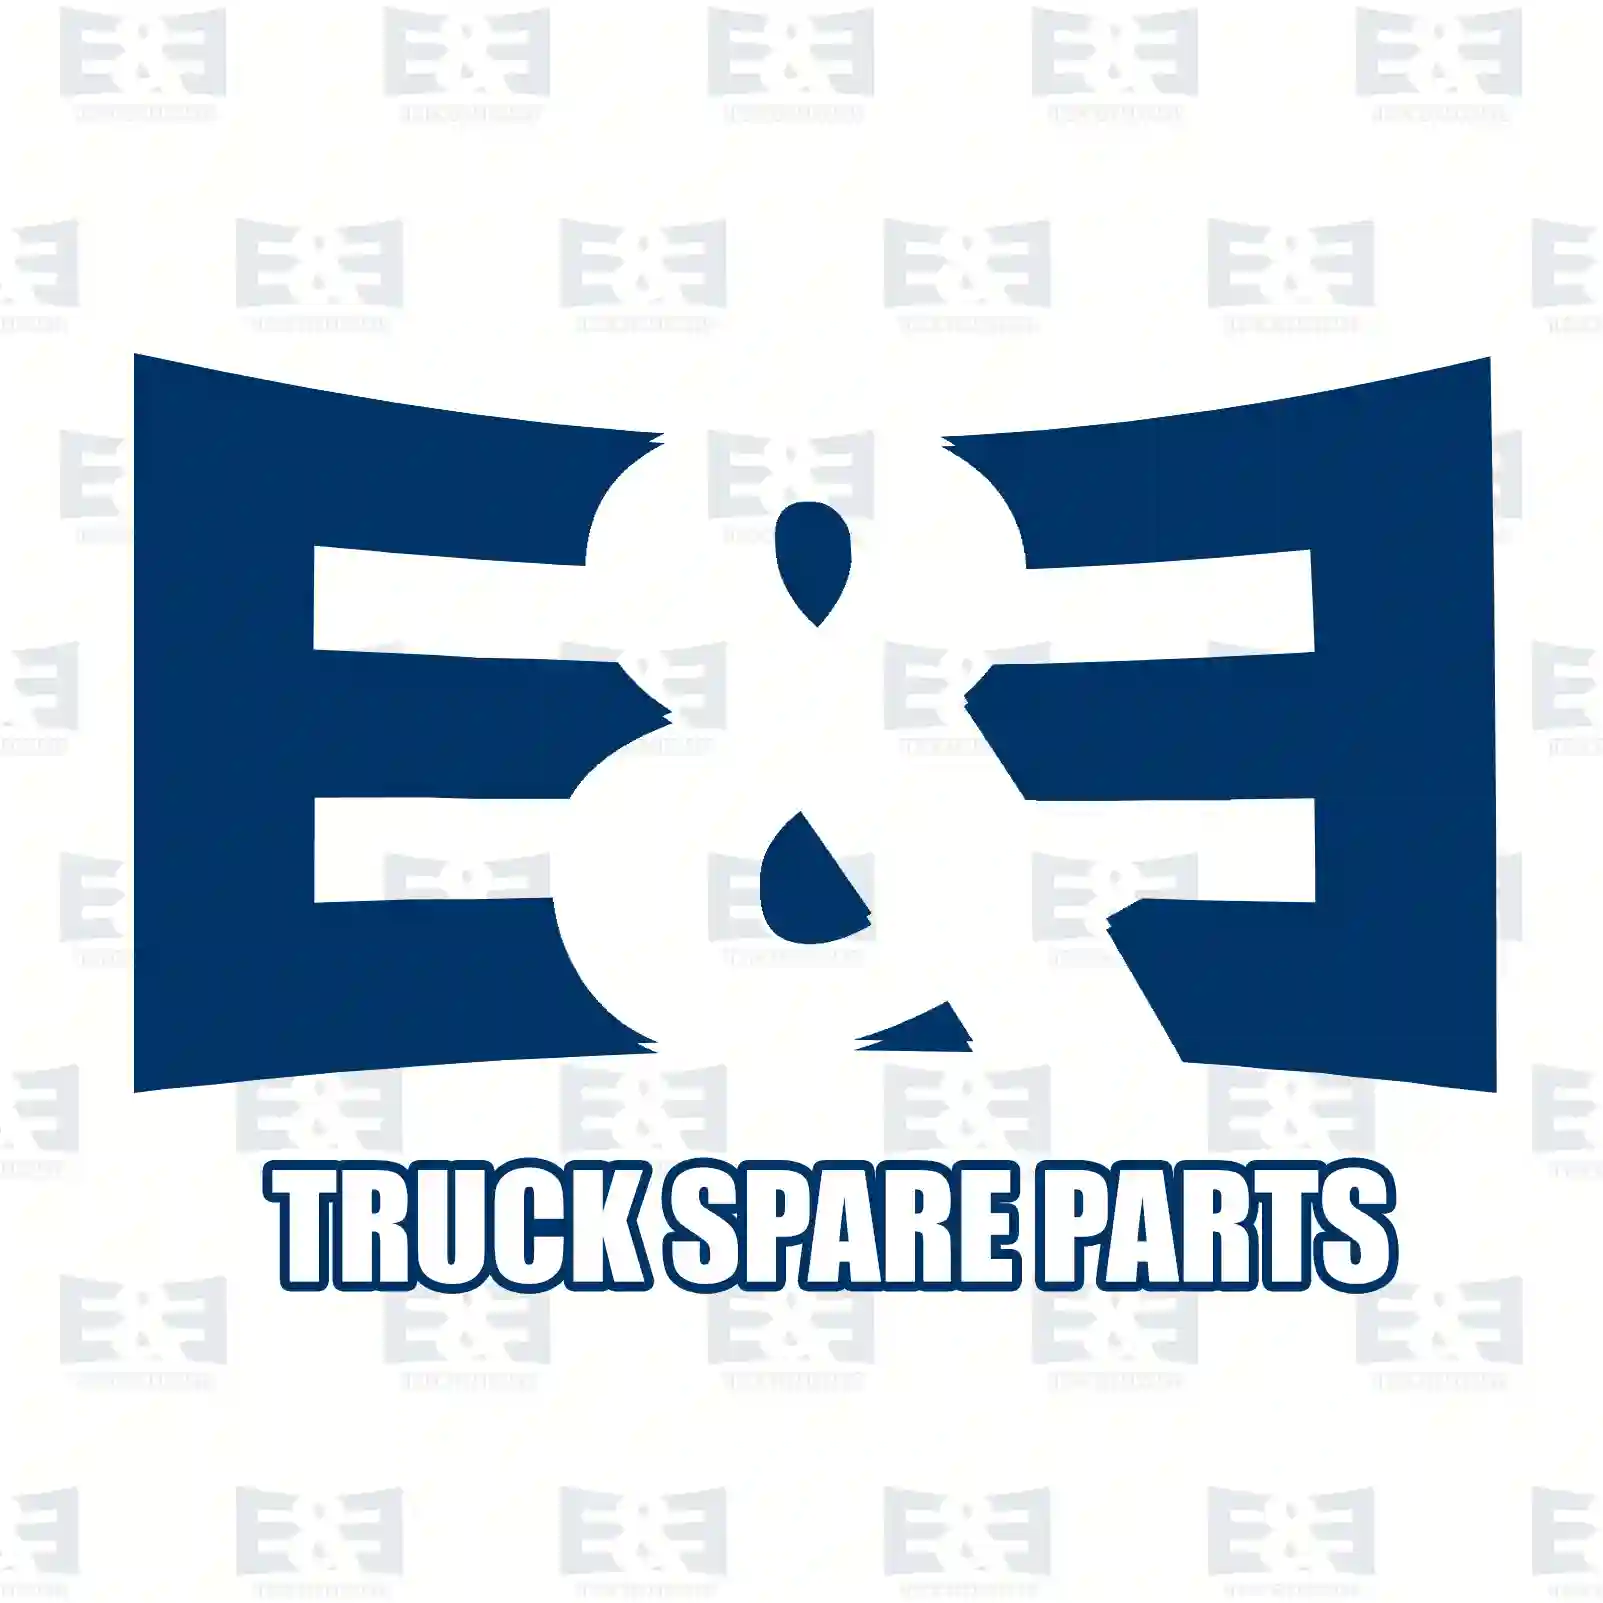 Propeller shaft, 2E2276865, 20565732 ||  2E2276865 E&E Truck Spare Parts | Truck Spare Parts, Auotomotive Spare Parts Propeller shaft, 2E2276865, 20565732 ||  2E2276865 E&E Truck Spare Parts | Truck Spare Parts, Auotomotive Spare Parts